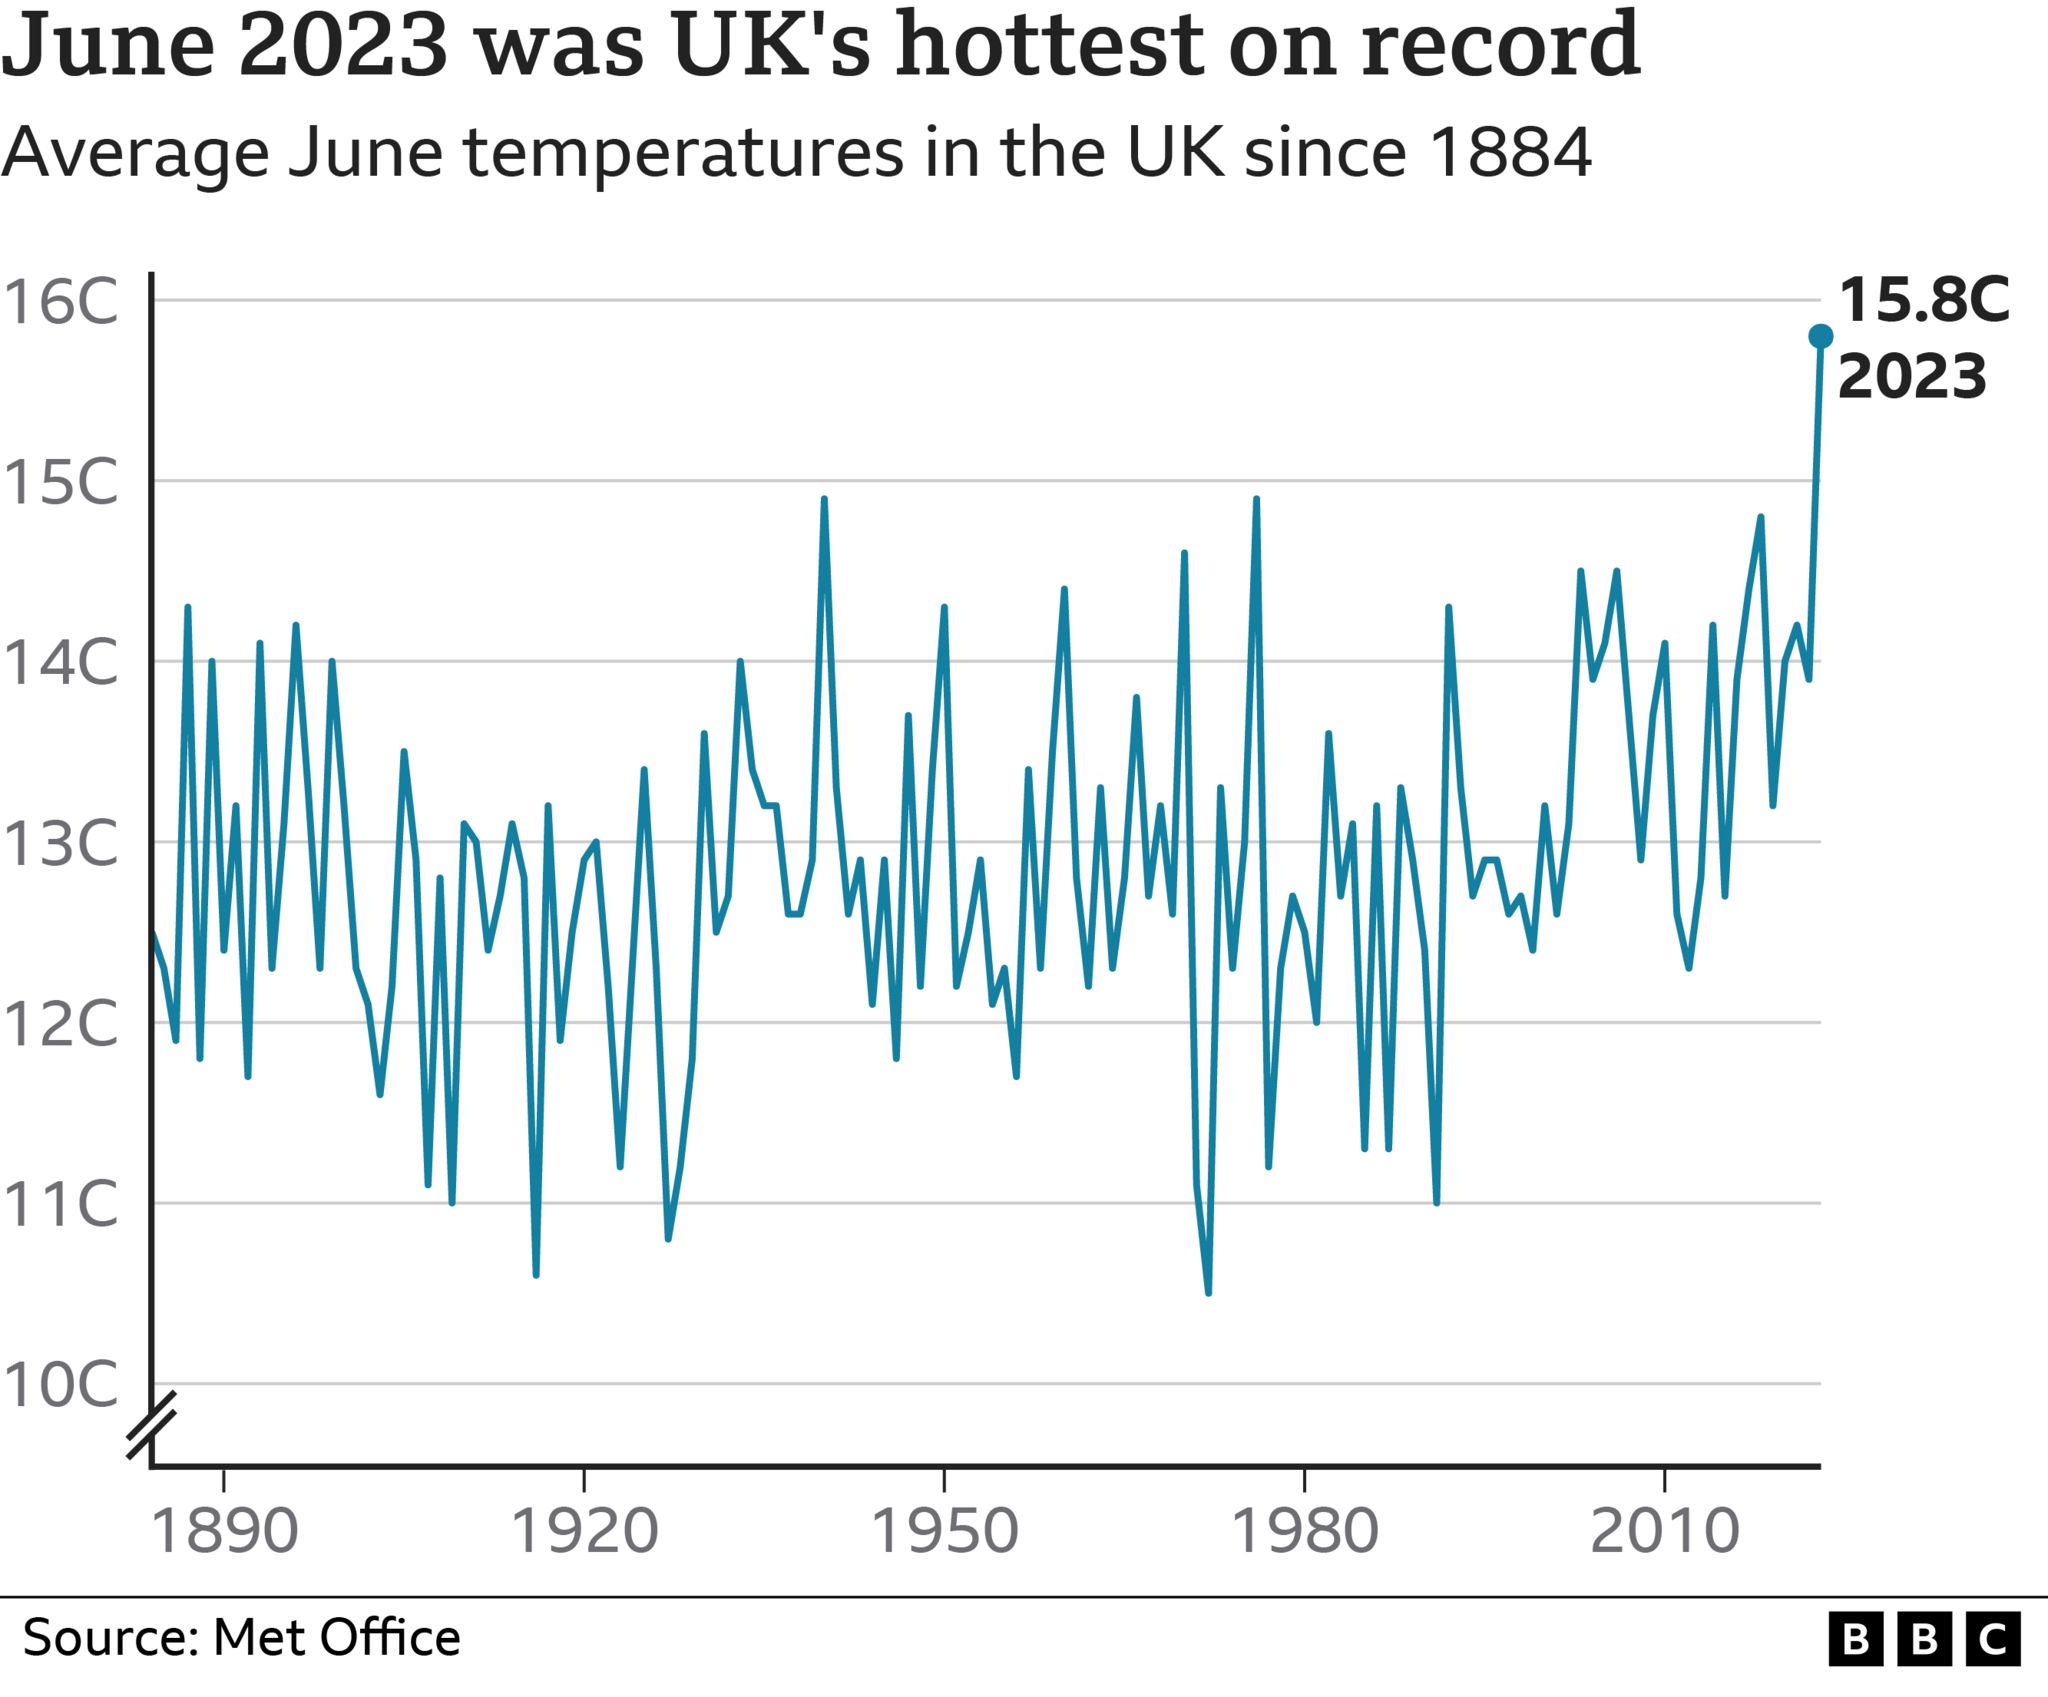 Gráfico con las temperaturas registradas en junio desde 1890